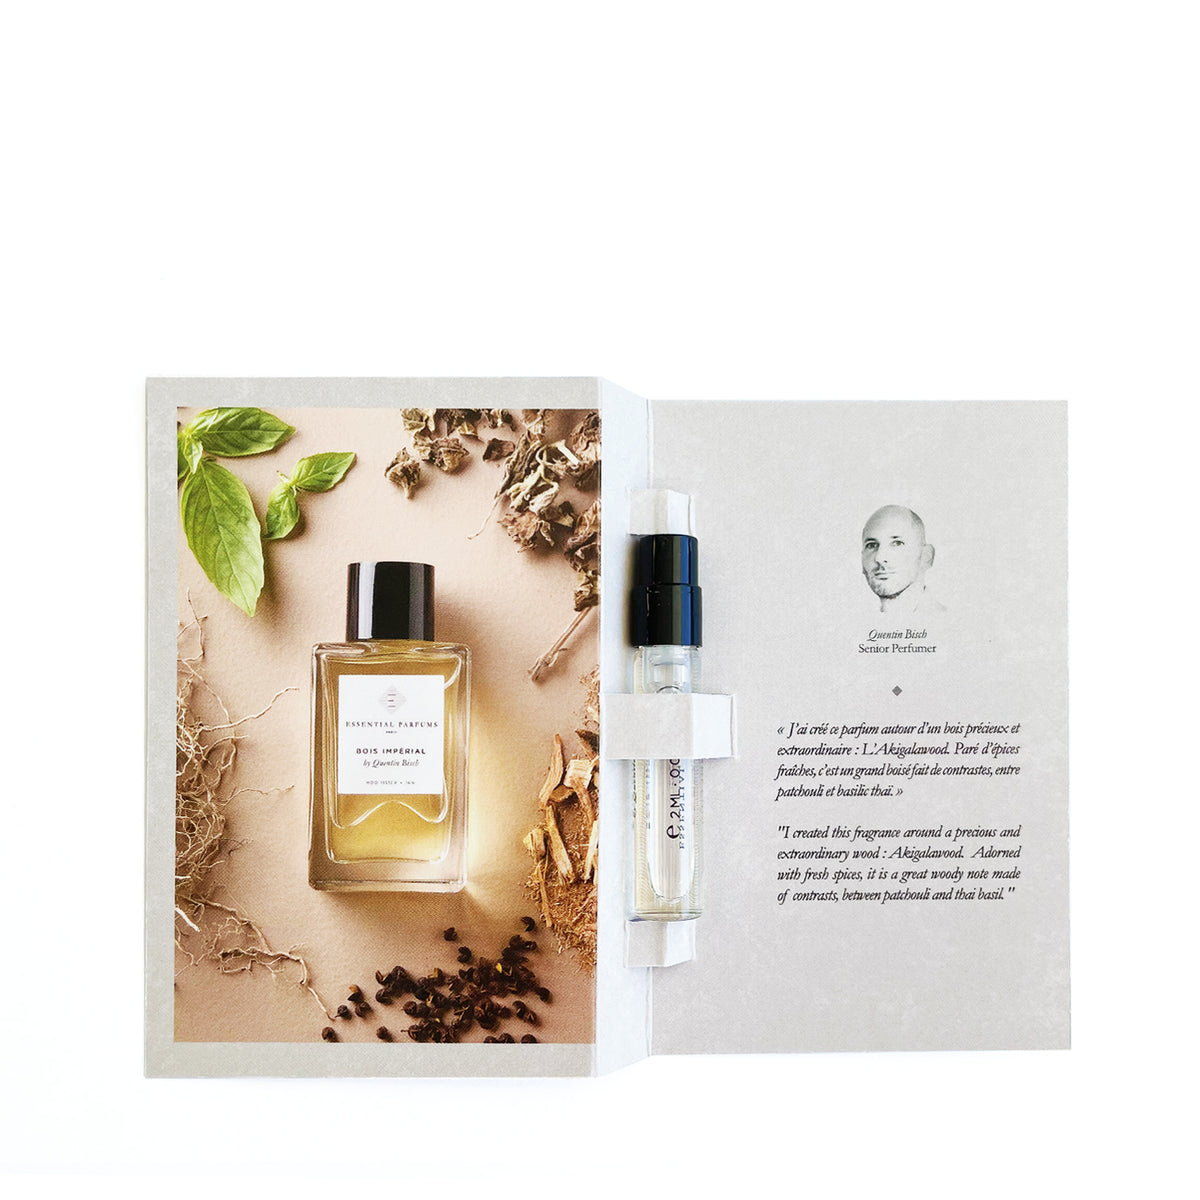 Sample Vial - Essential Parfums Bois Imperial Eau de Parfum: Official ...